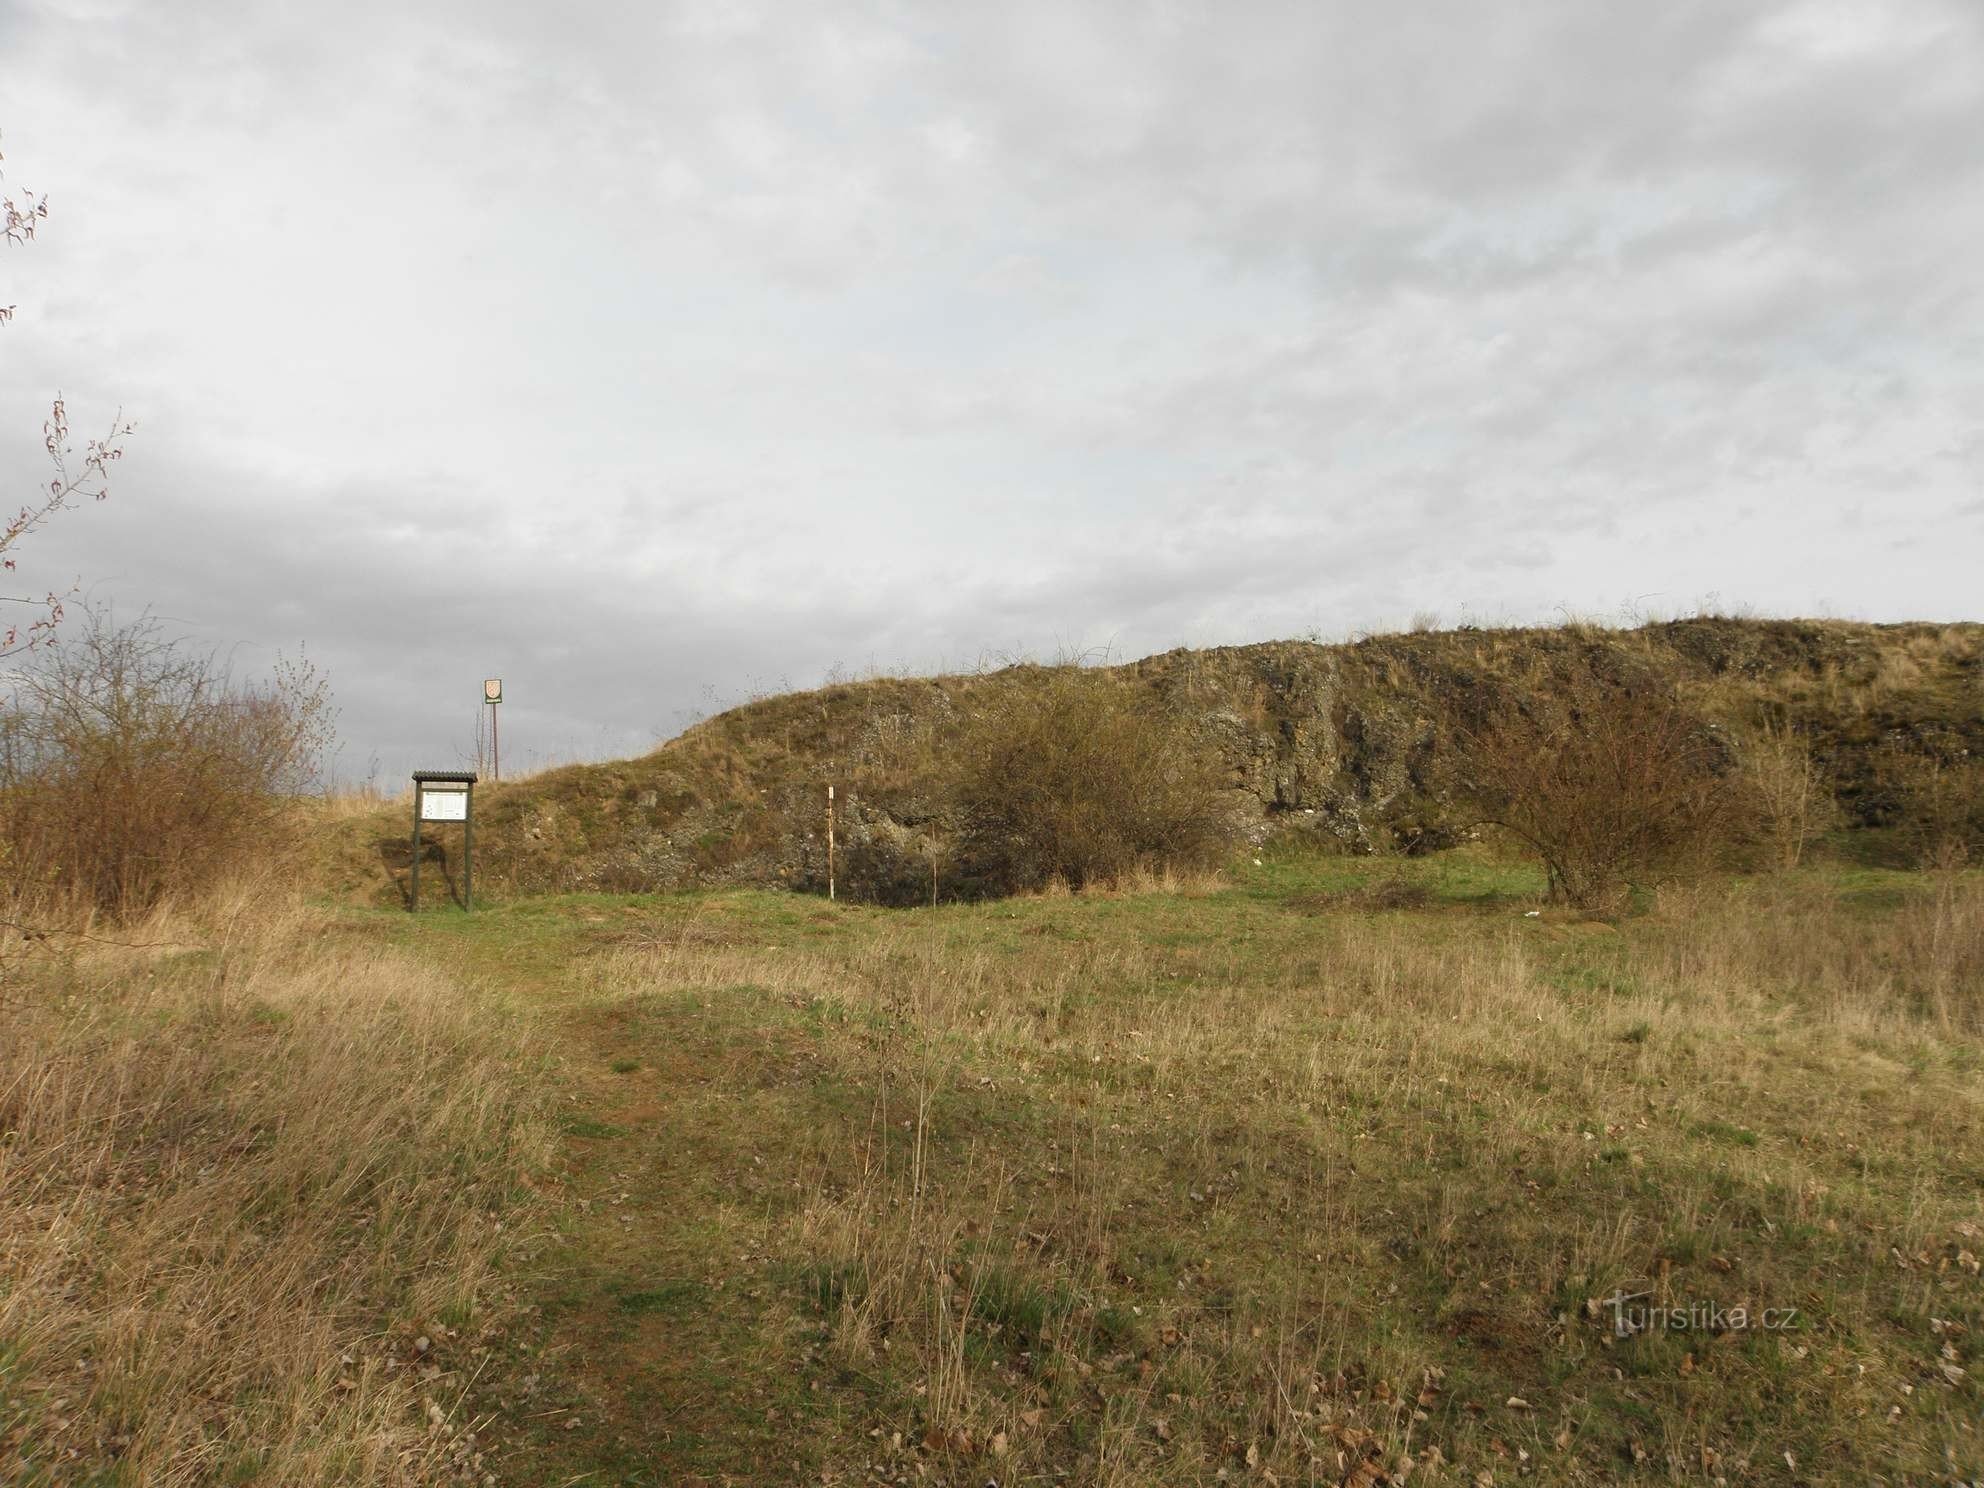 Tượng đài tự nhiên Horka - ngọn đồi chính, bảng thông tin - 2.4.2012 tháng XNUMX năm XNUMX